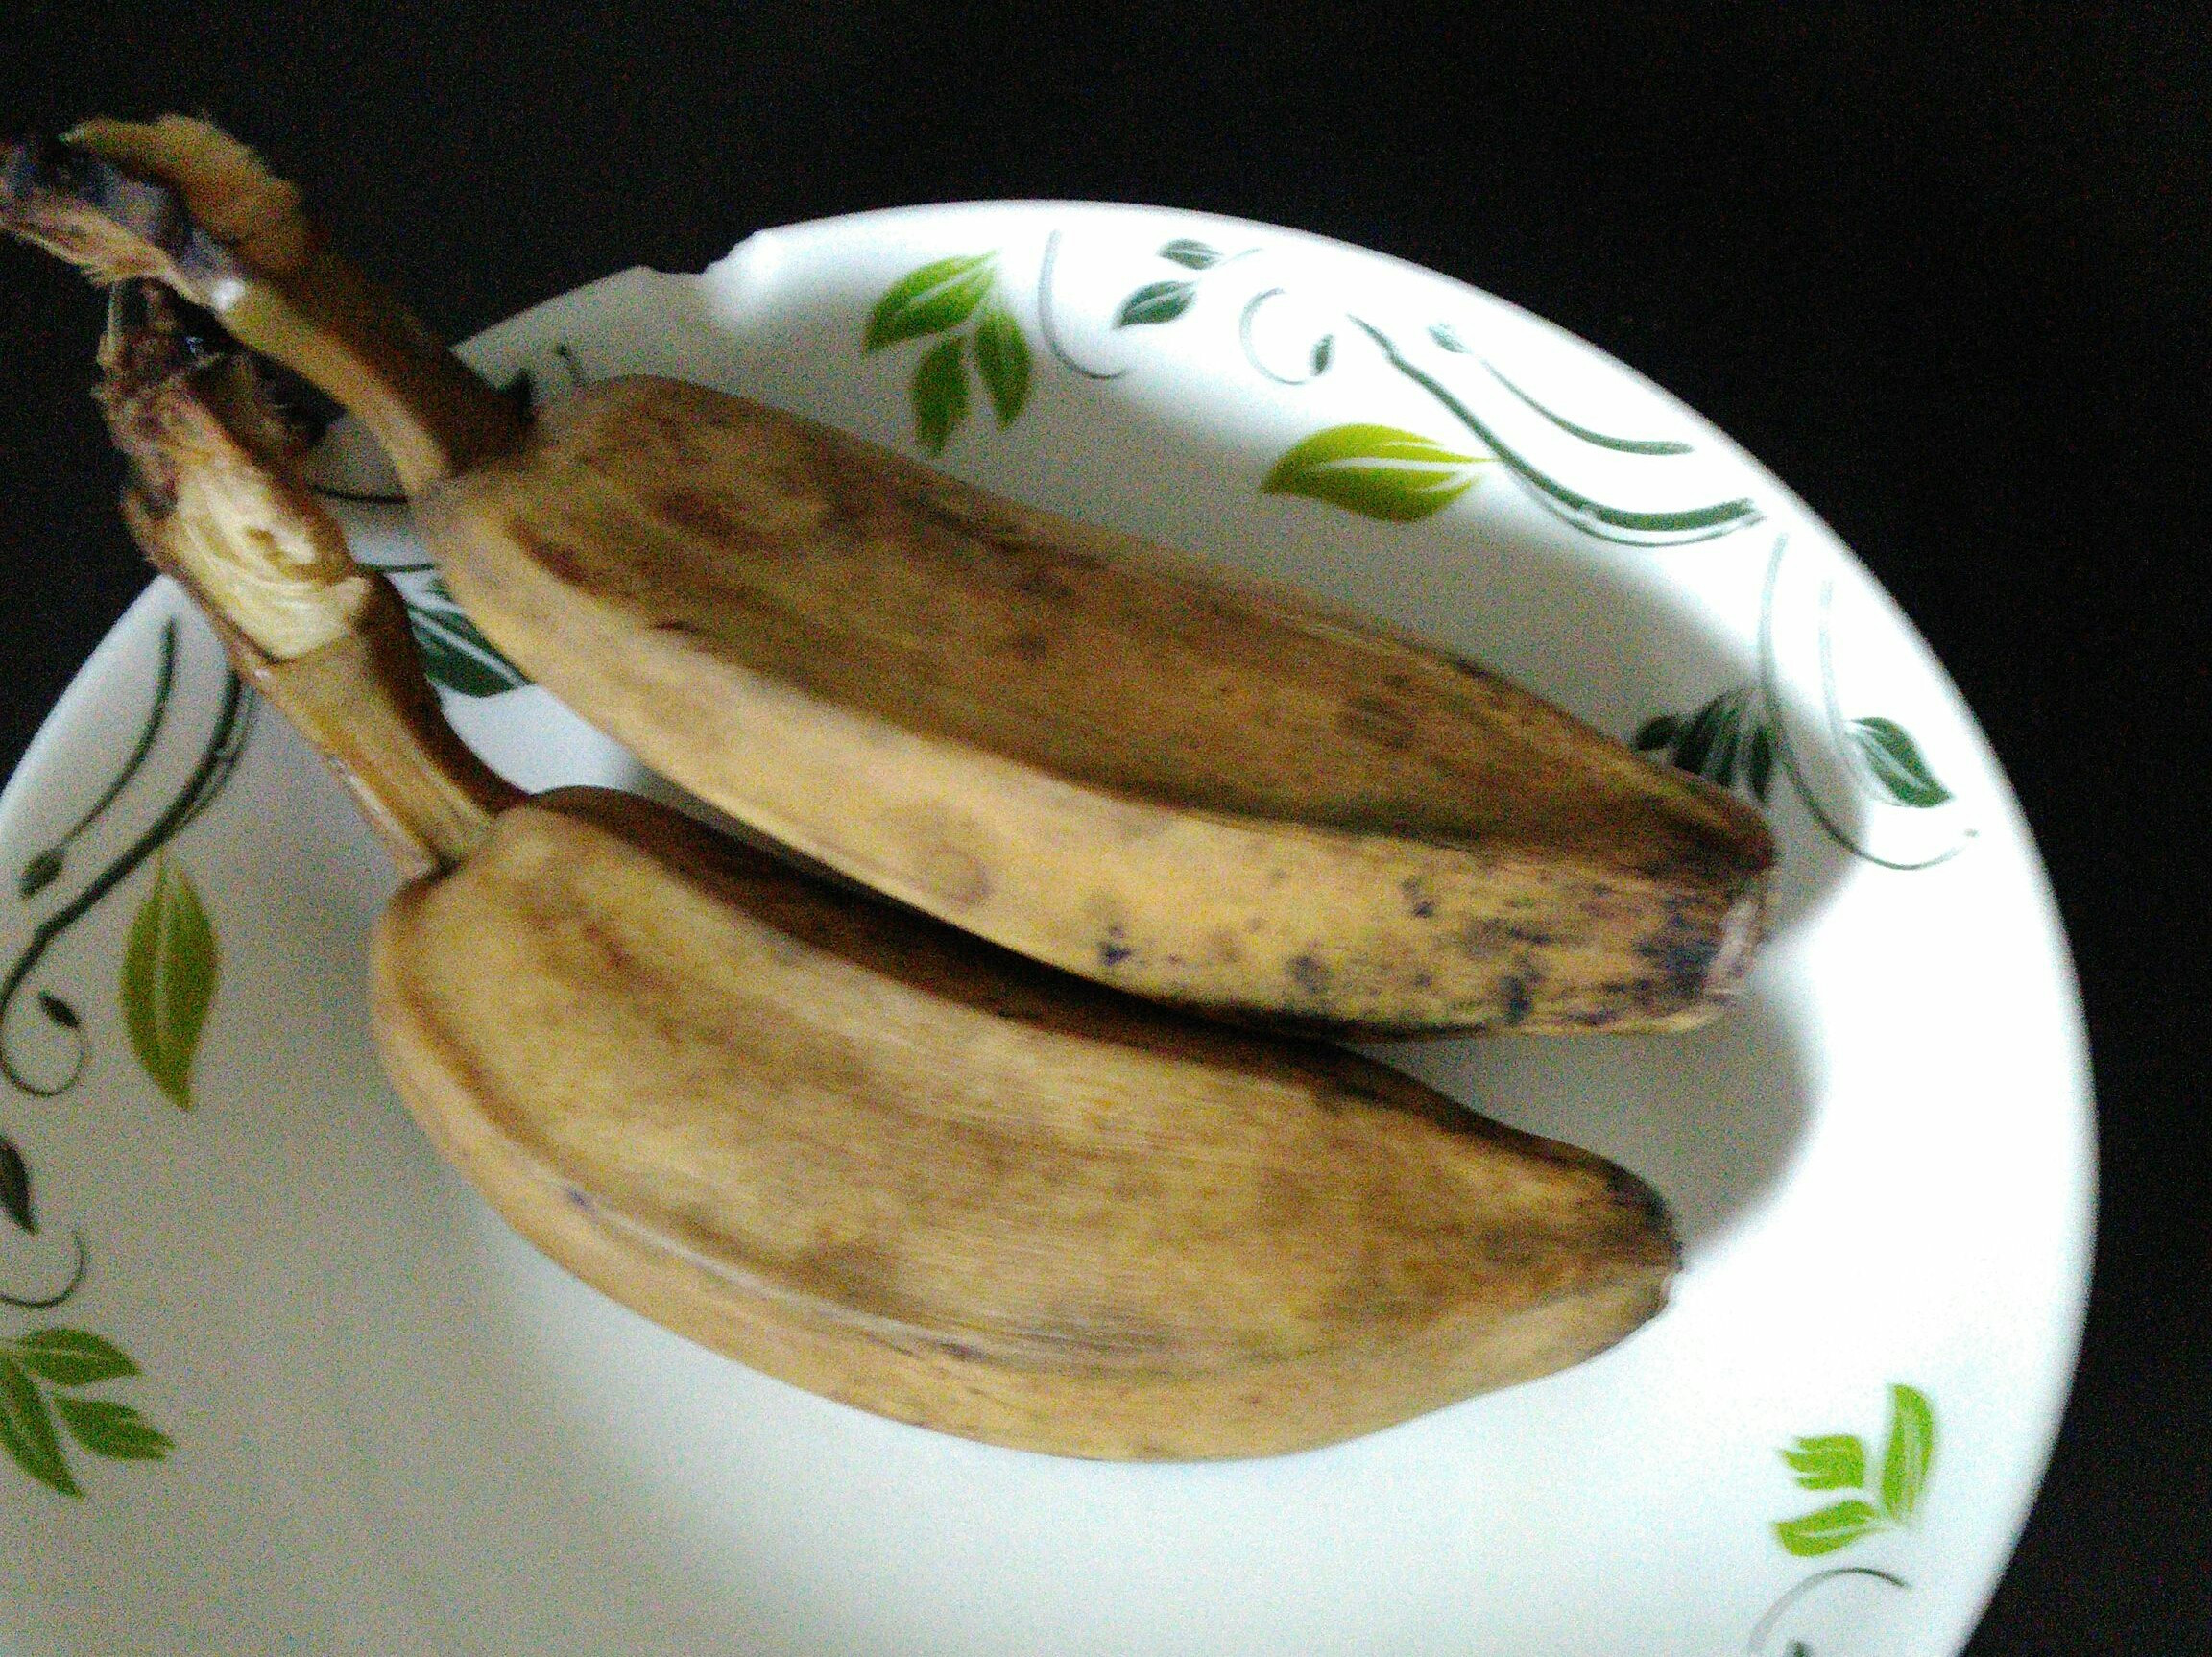 煮香蕉是印尼早餐的主食之一 库存图片. 图片 包括有 有阳台, 一个, 快餐, 工厂, 楼梯栏杆, 烹调 - 223873765